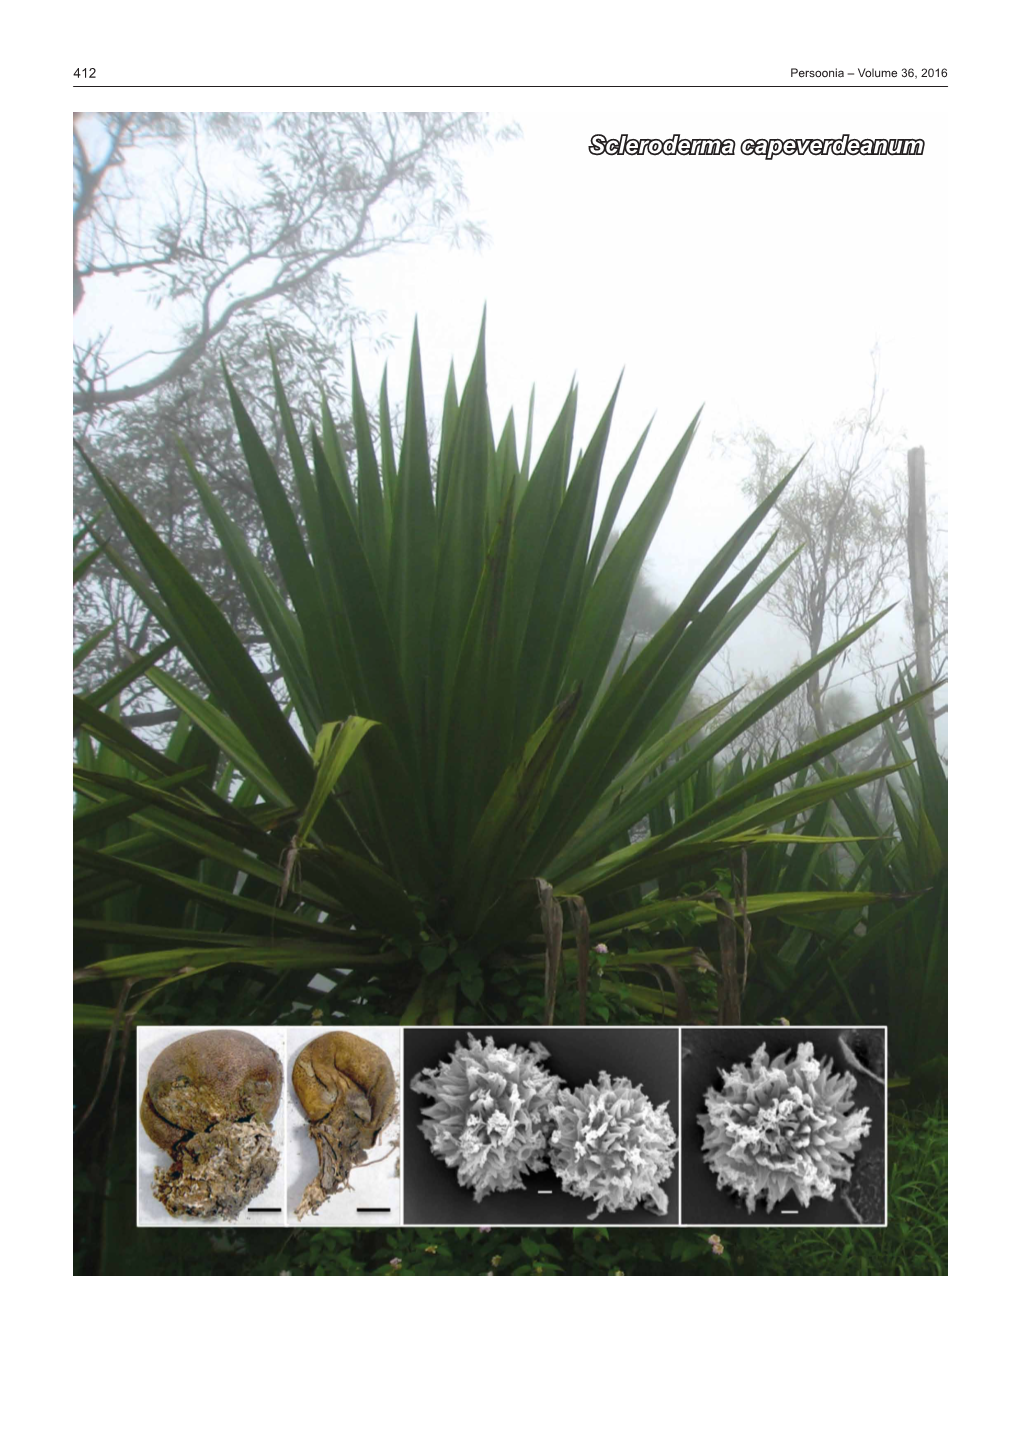 Scleroderma Capeverdeanum Fungal Planet Description Sheets 413